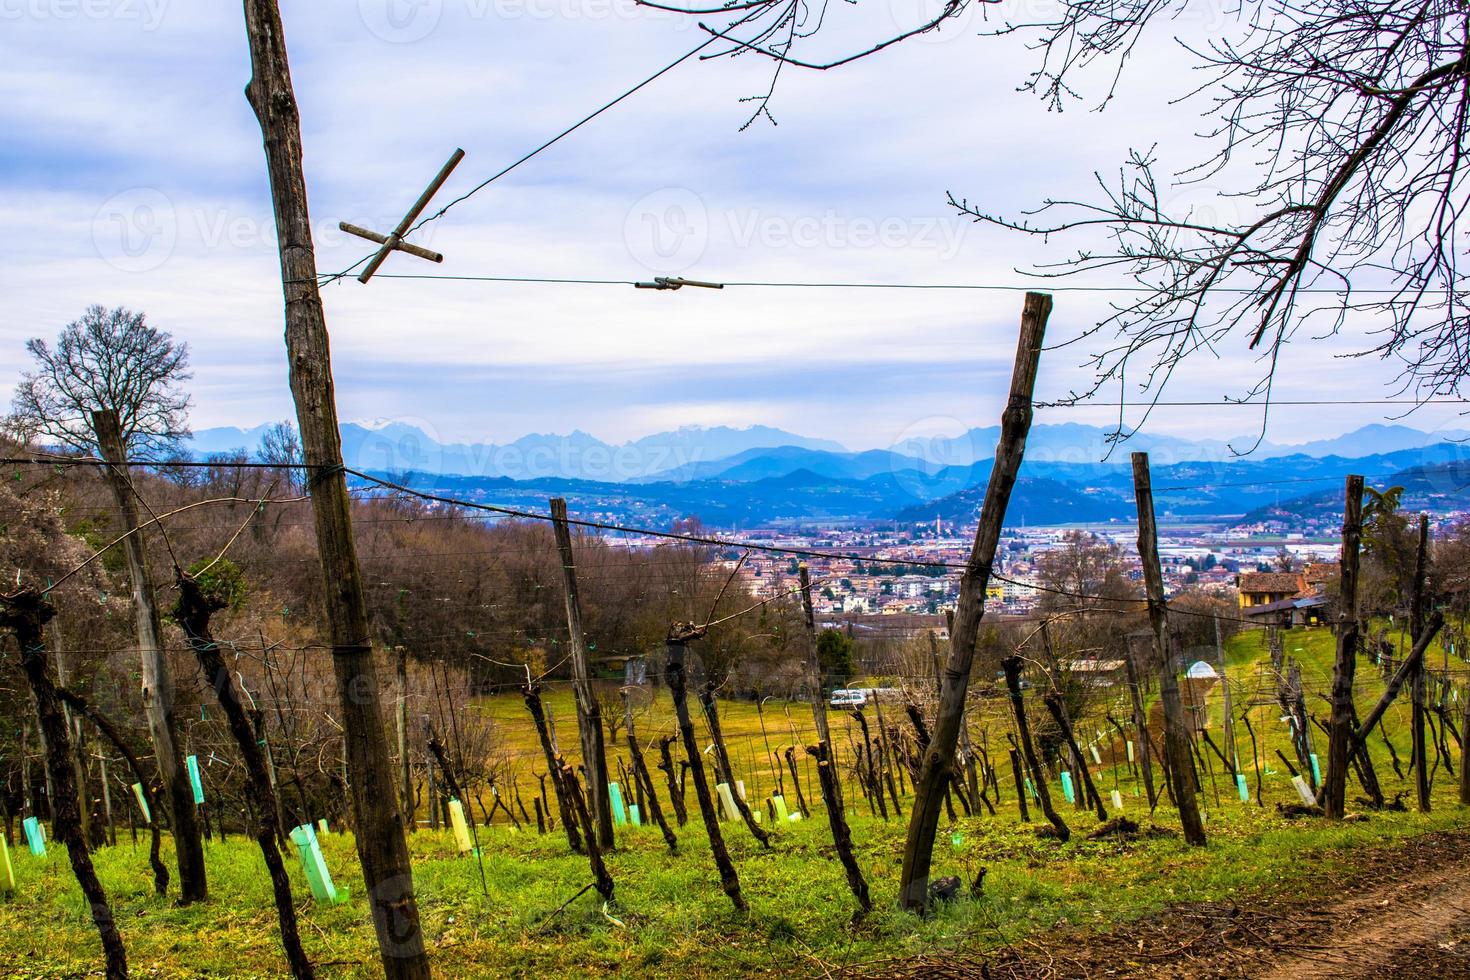 The vineyard awakens from winter photo